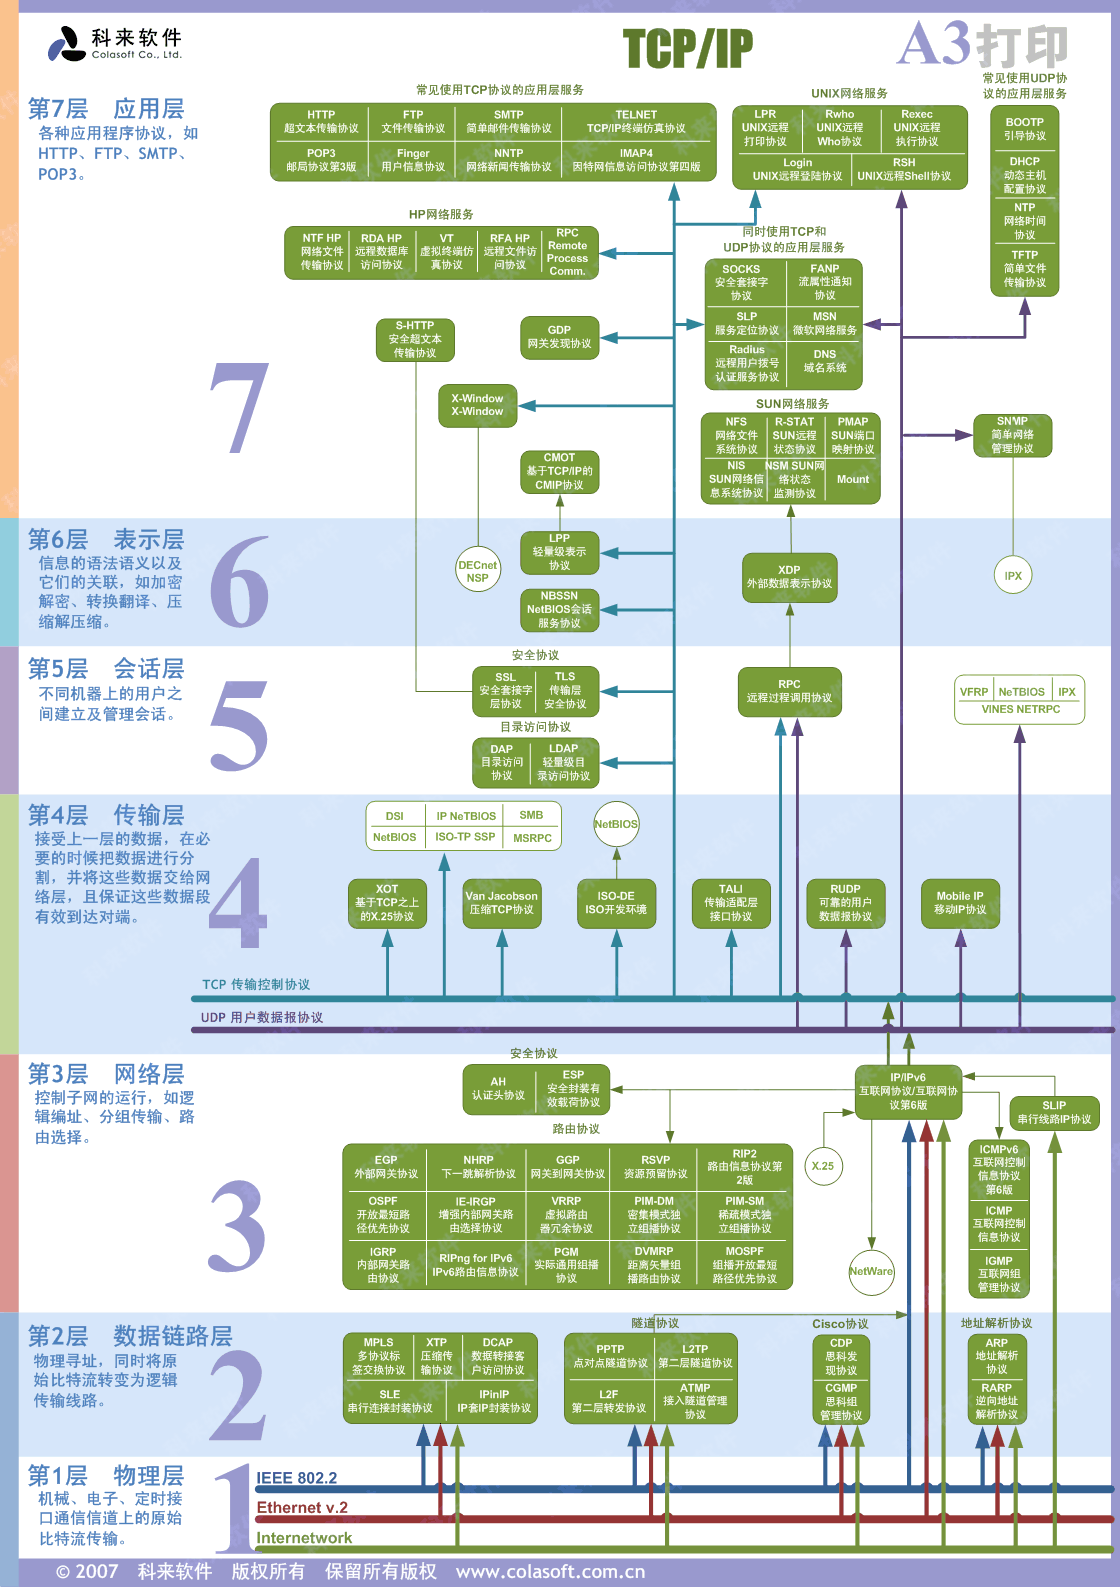 OSI 模型 网络协议七层分层通俗说明整理